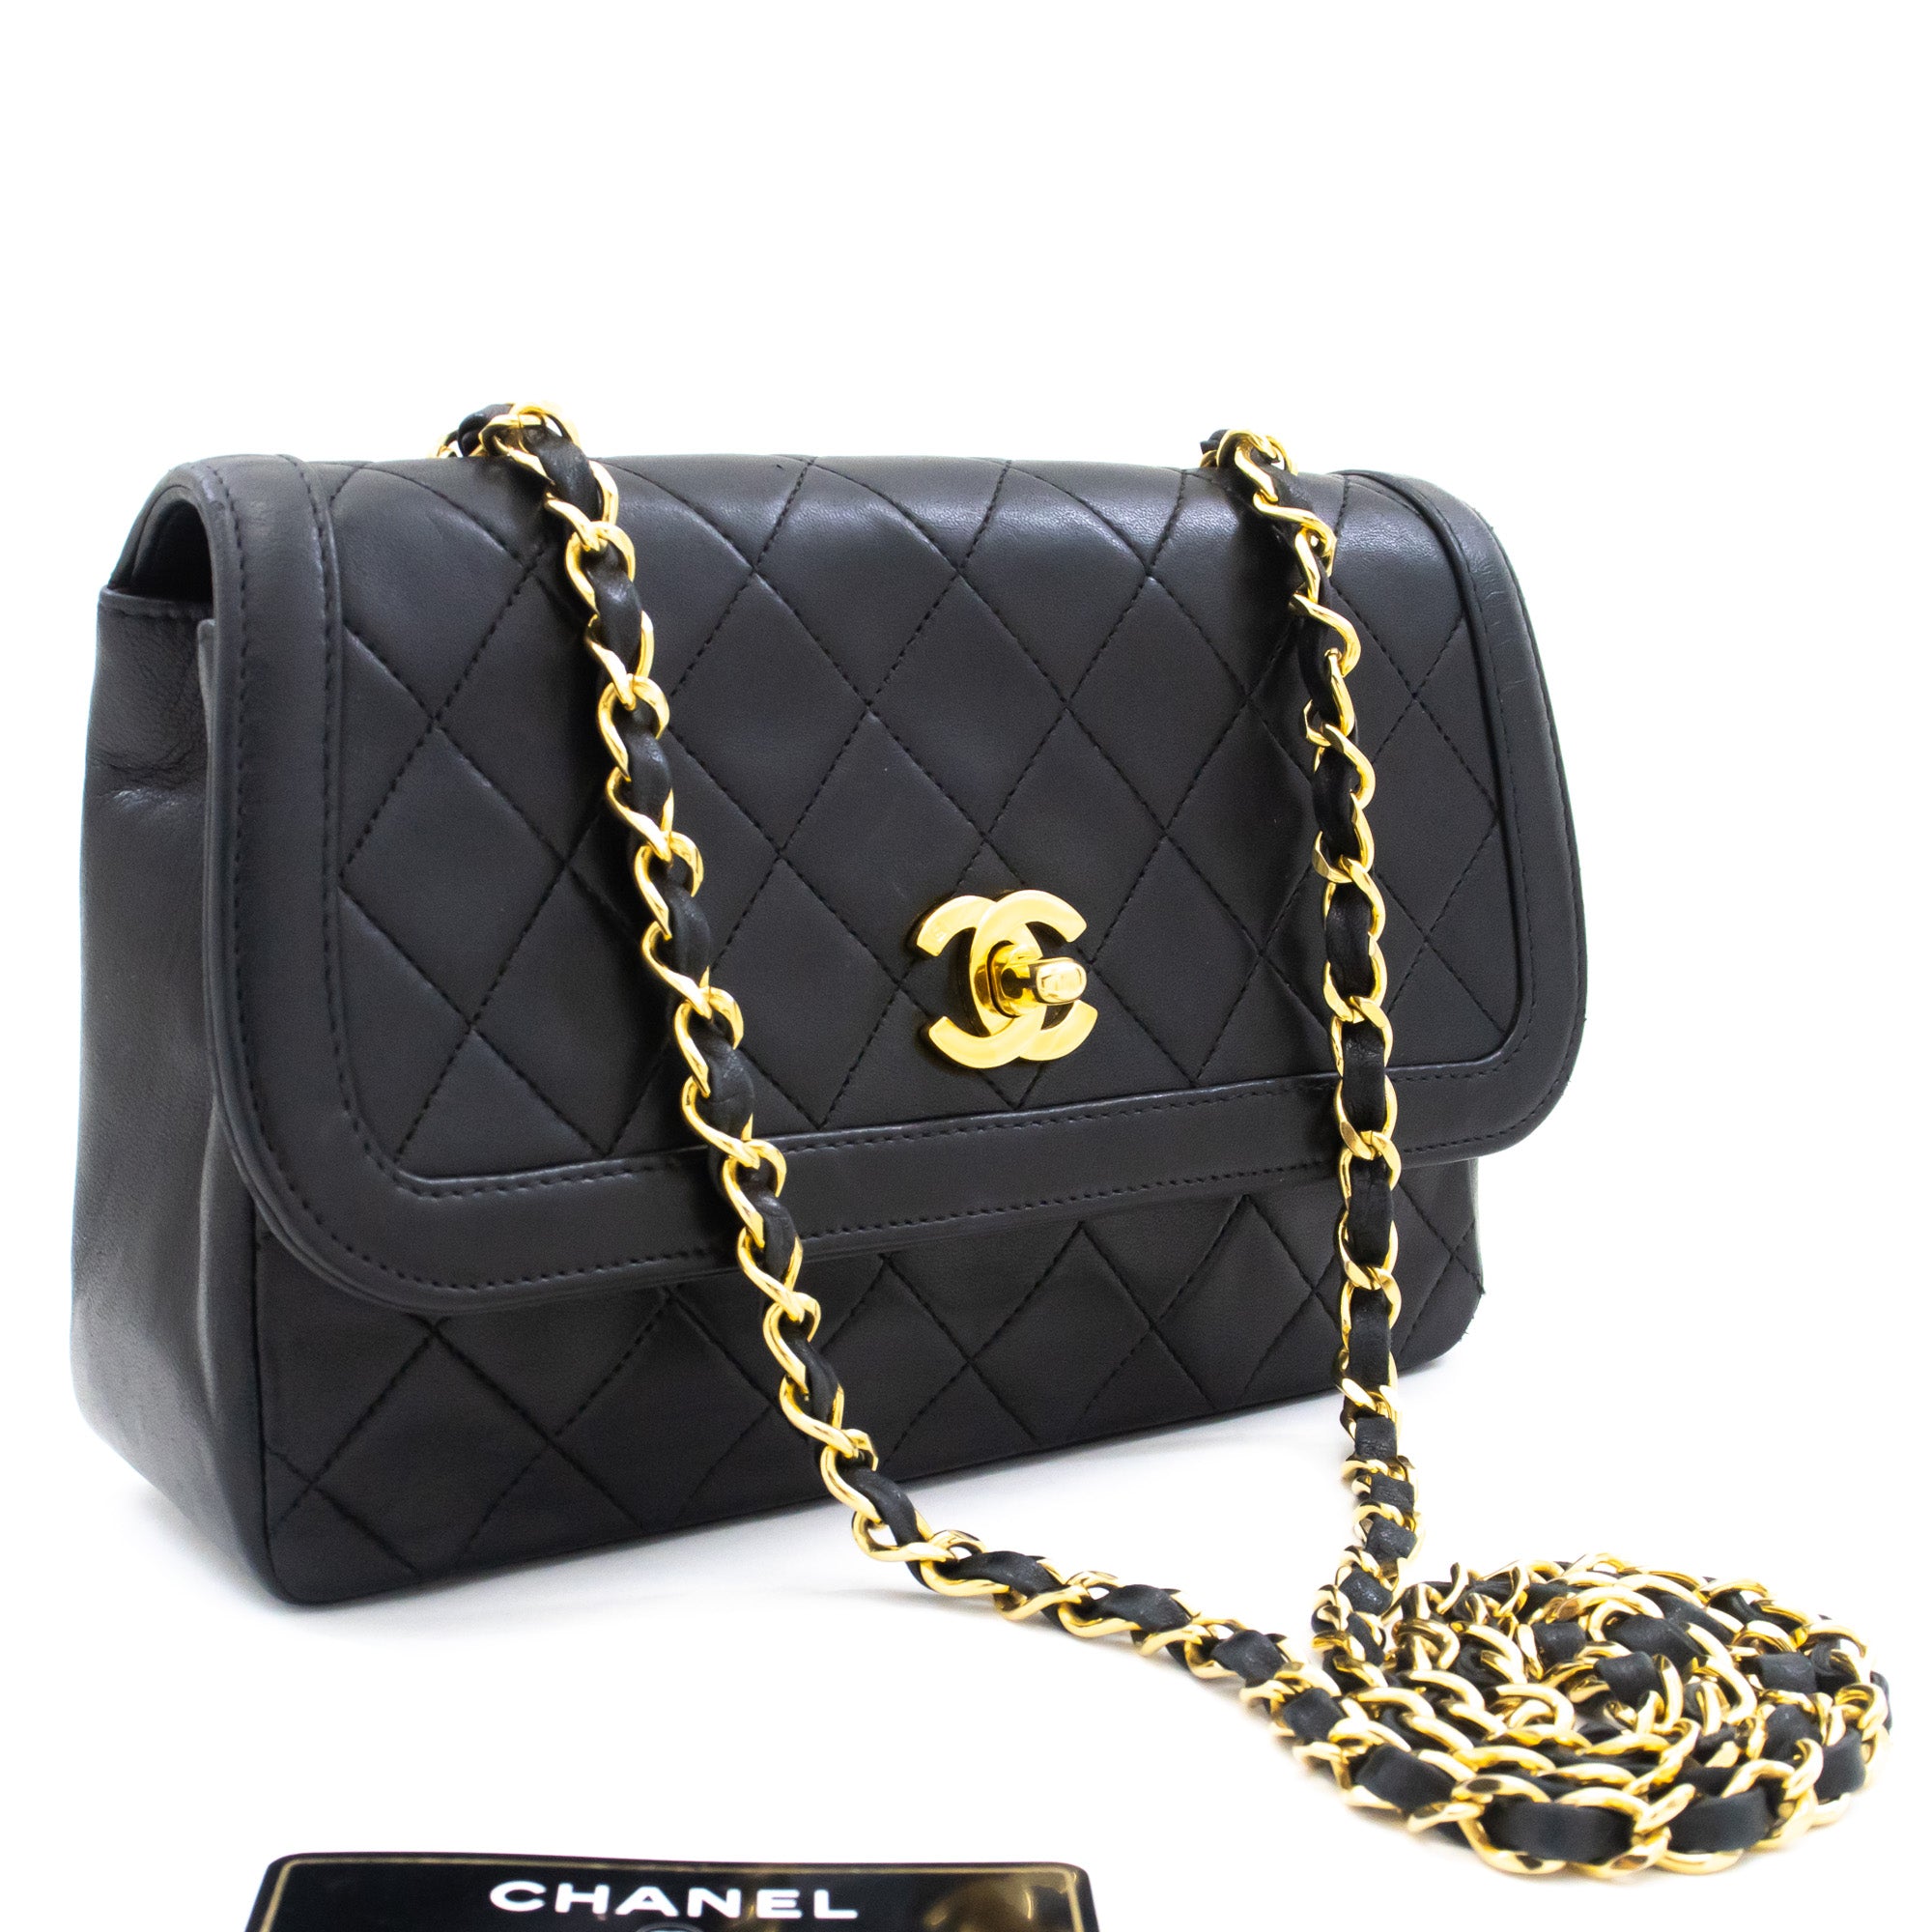 Chanel Flap Large Elegant CC Calfskin Shoulder Bag